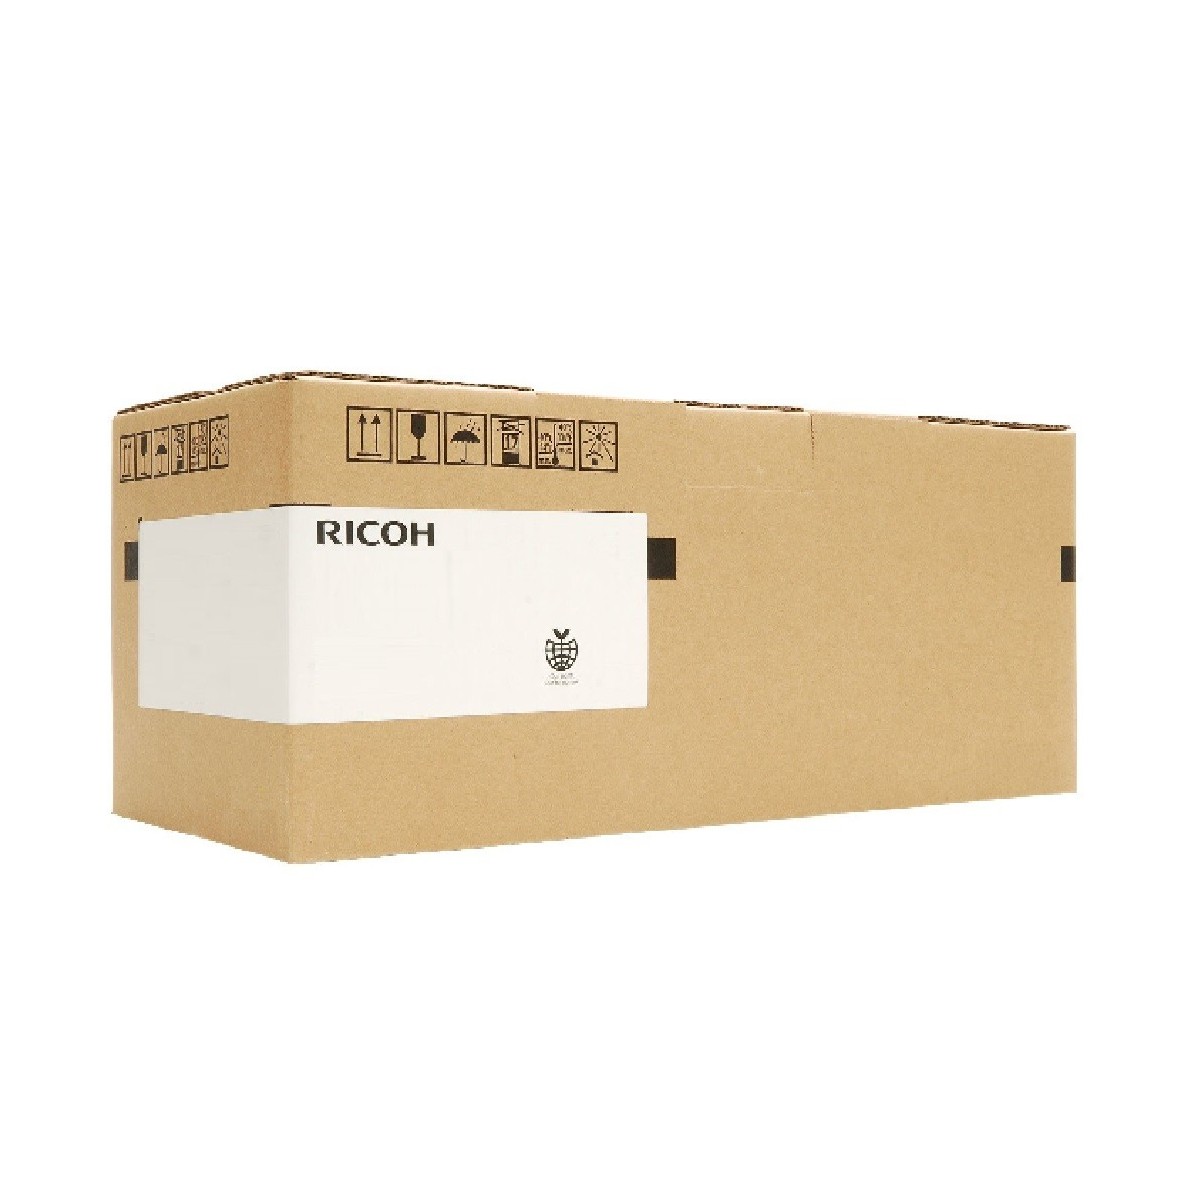 Ricoh 407099 - 160000 pages - Ricoh - Aficio SP C830DN Aficio SP C831DN - 1 pc(s)